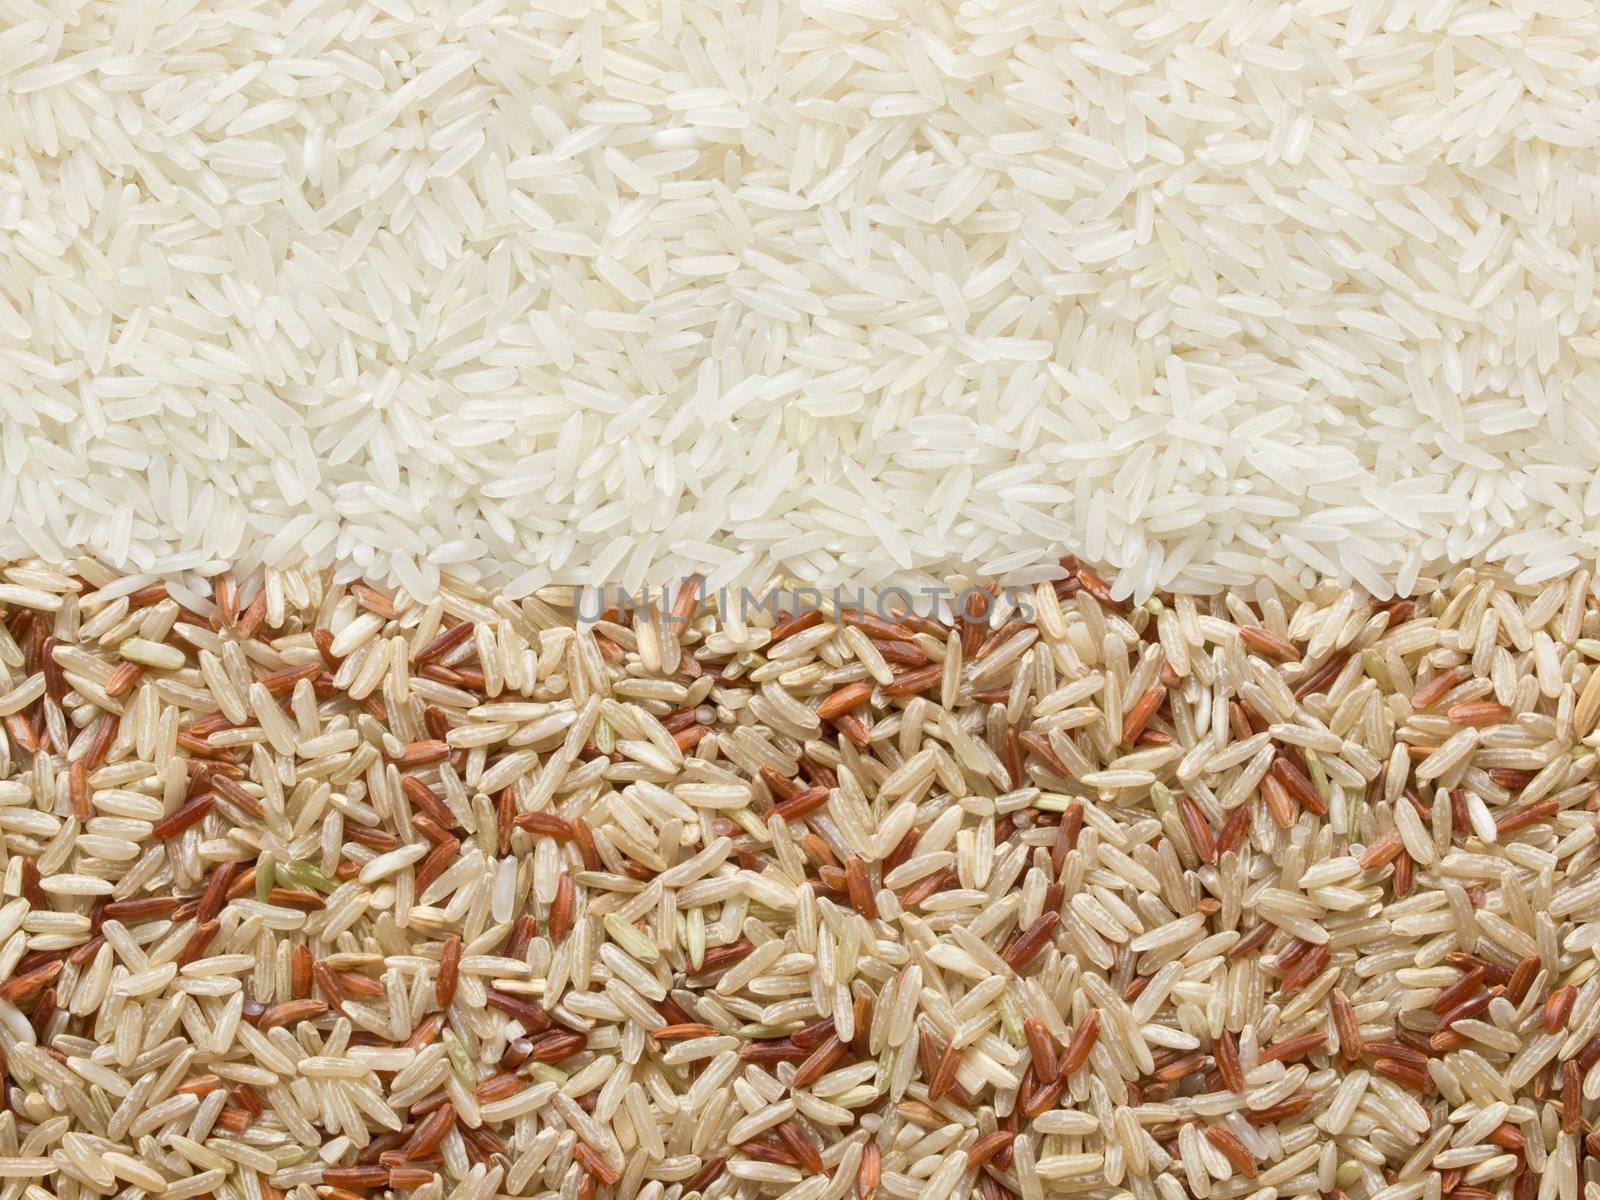 polished ands unpolished rice by zkruger